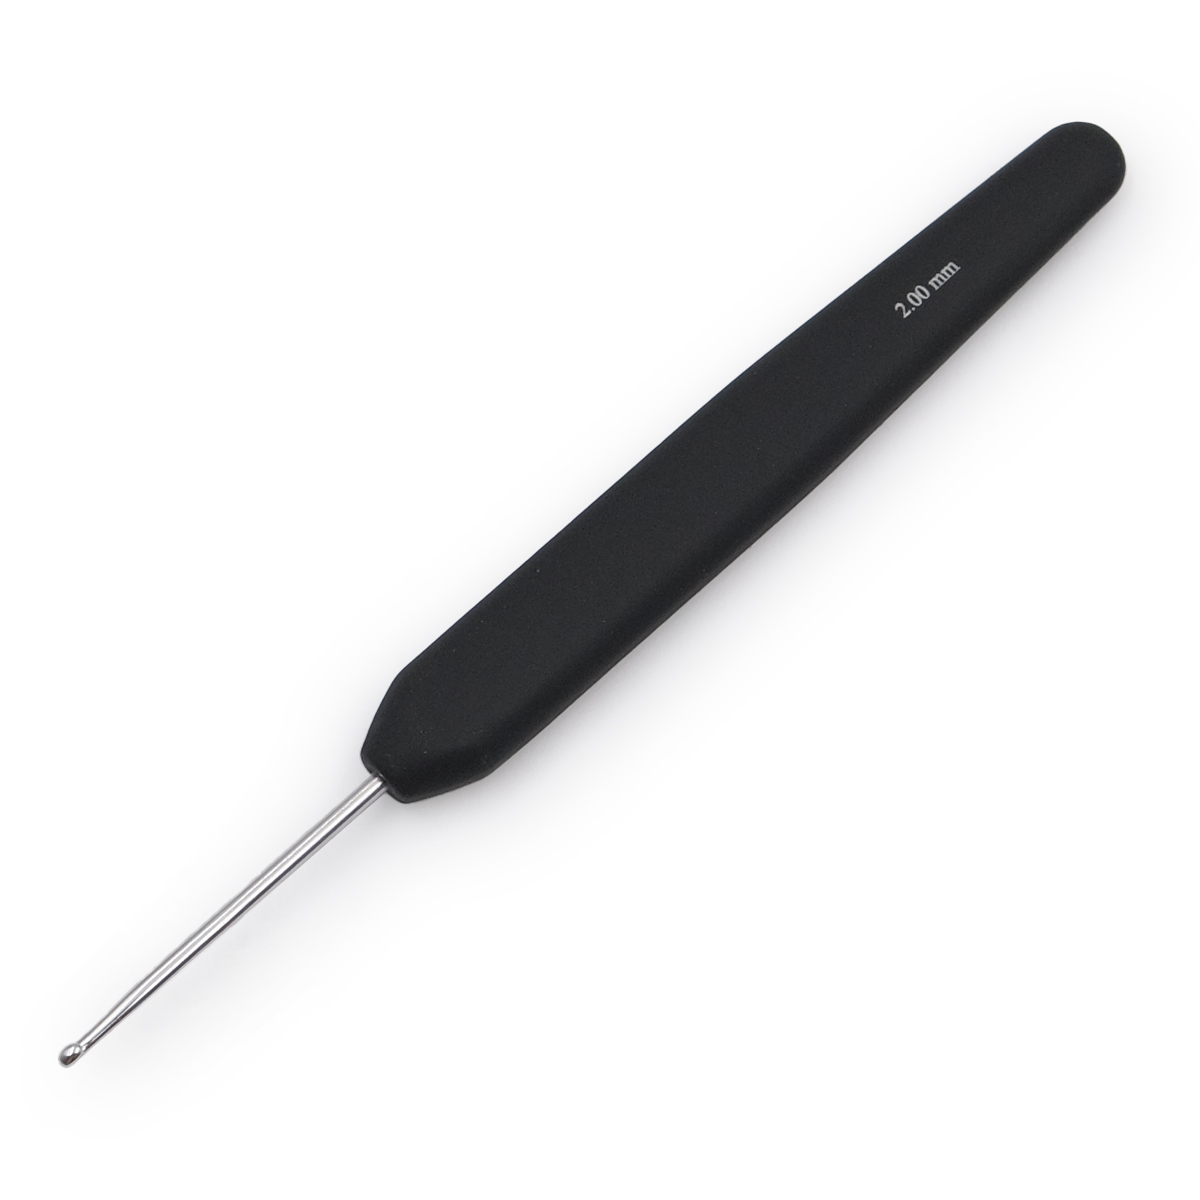 Крючок для вязания с эрг ручкой BasixAluminum 2мм, алюминий, серебро/черный, KnitPro